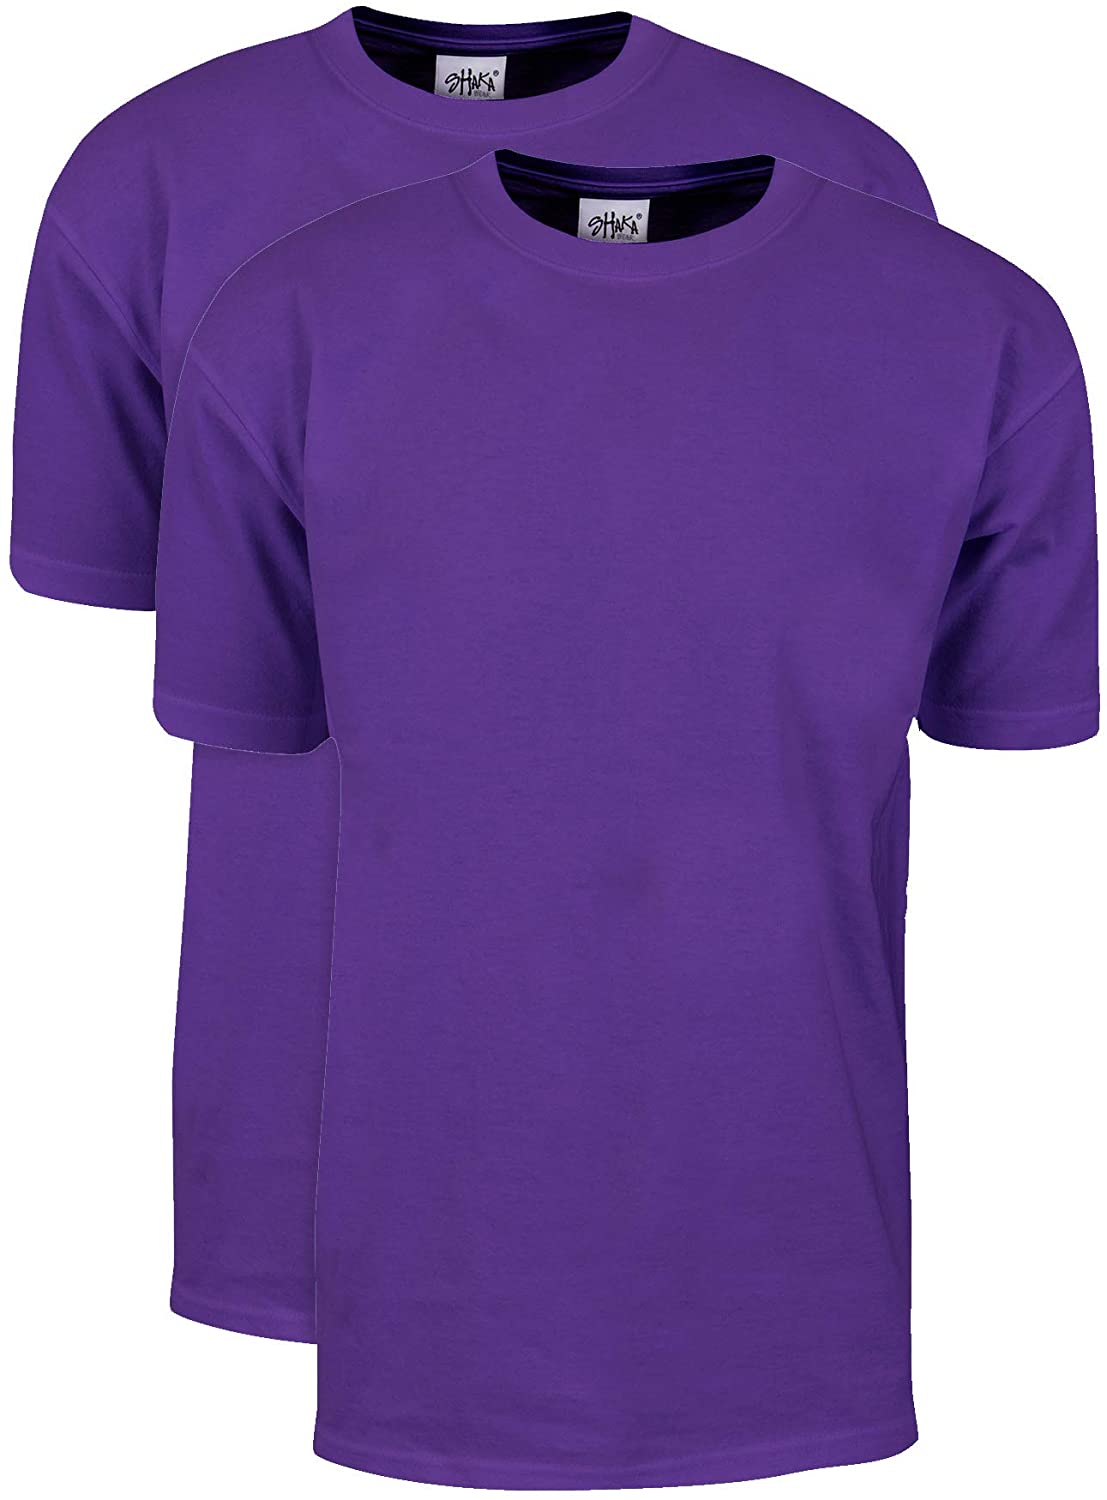 Shaka Wear Men's T Shirt – 2 Pack 7 oz Max Heavyweight Cotton